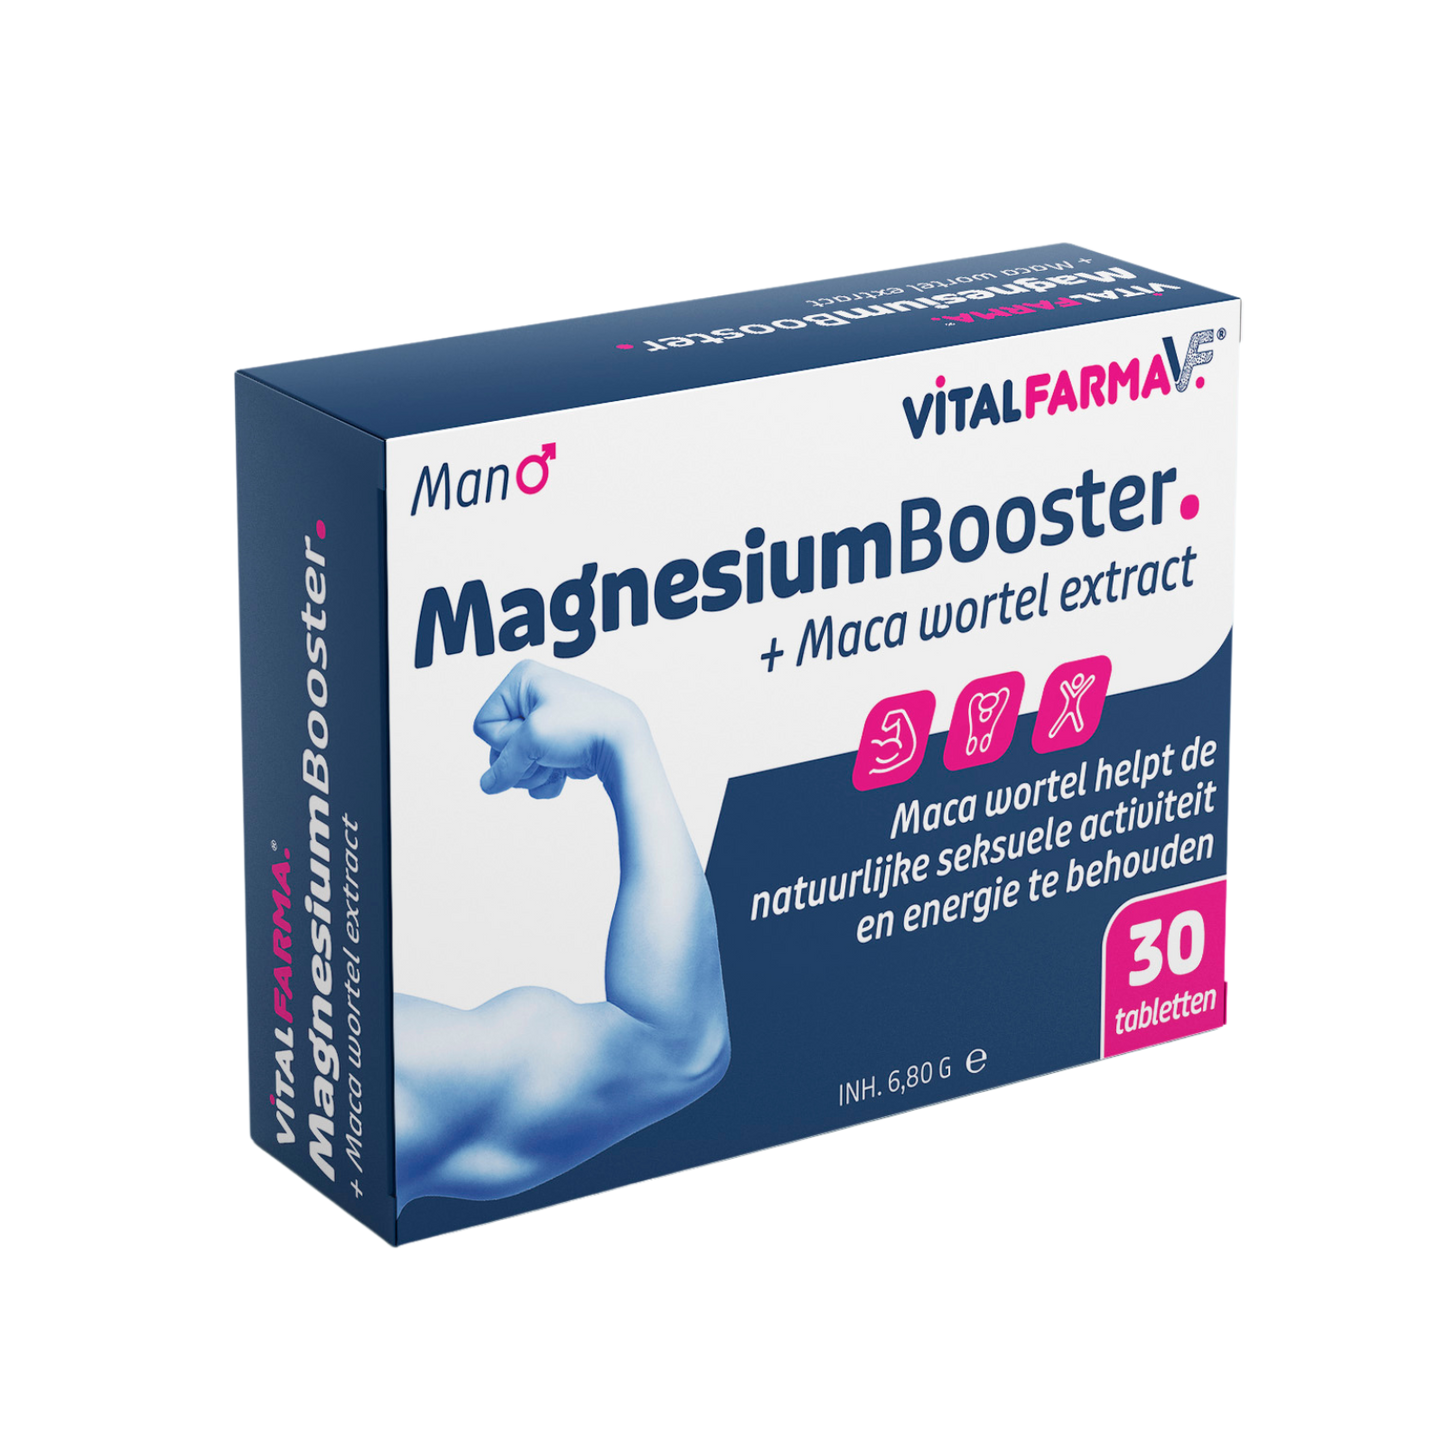 Magnesium Booster + maca